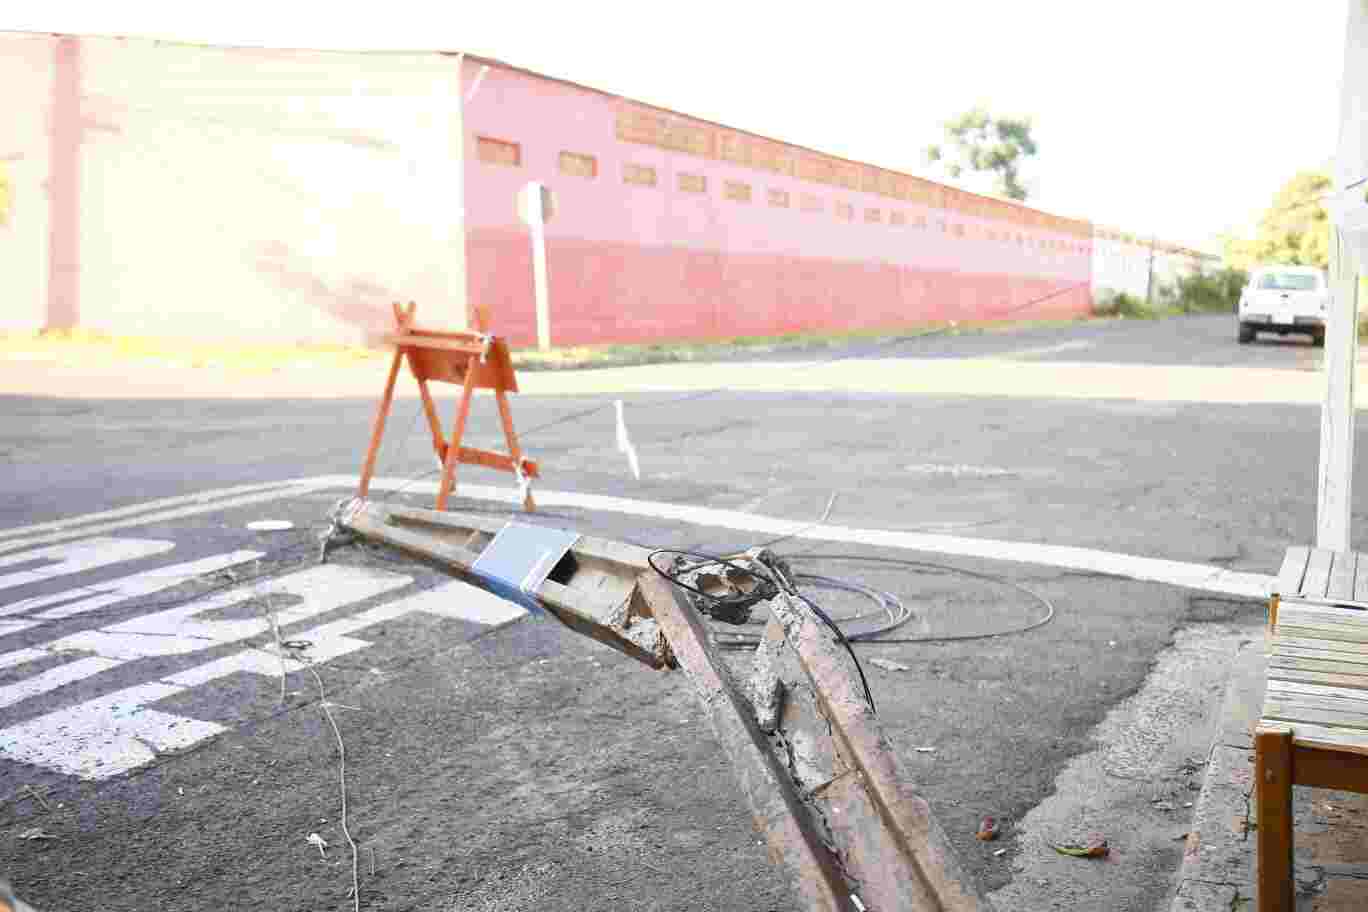 Um mês após cair sobre carro, poste ainda está no meio da rua e atrapalha trânsito no Guanandi